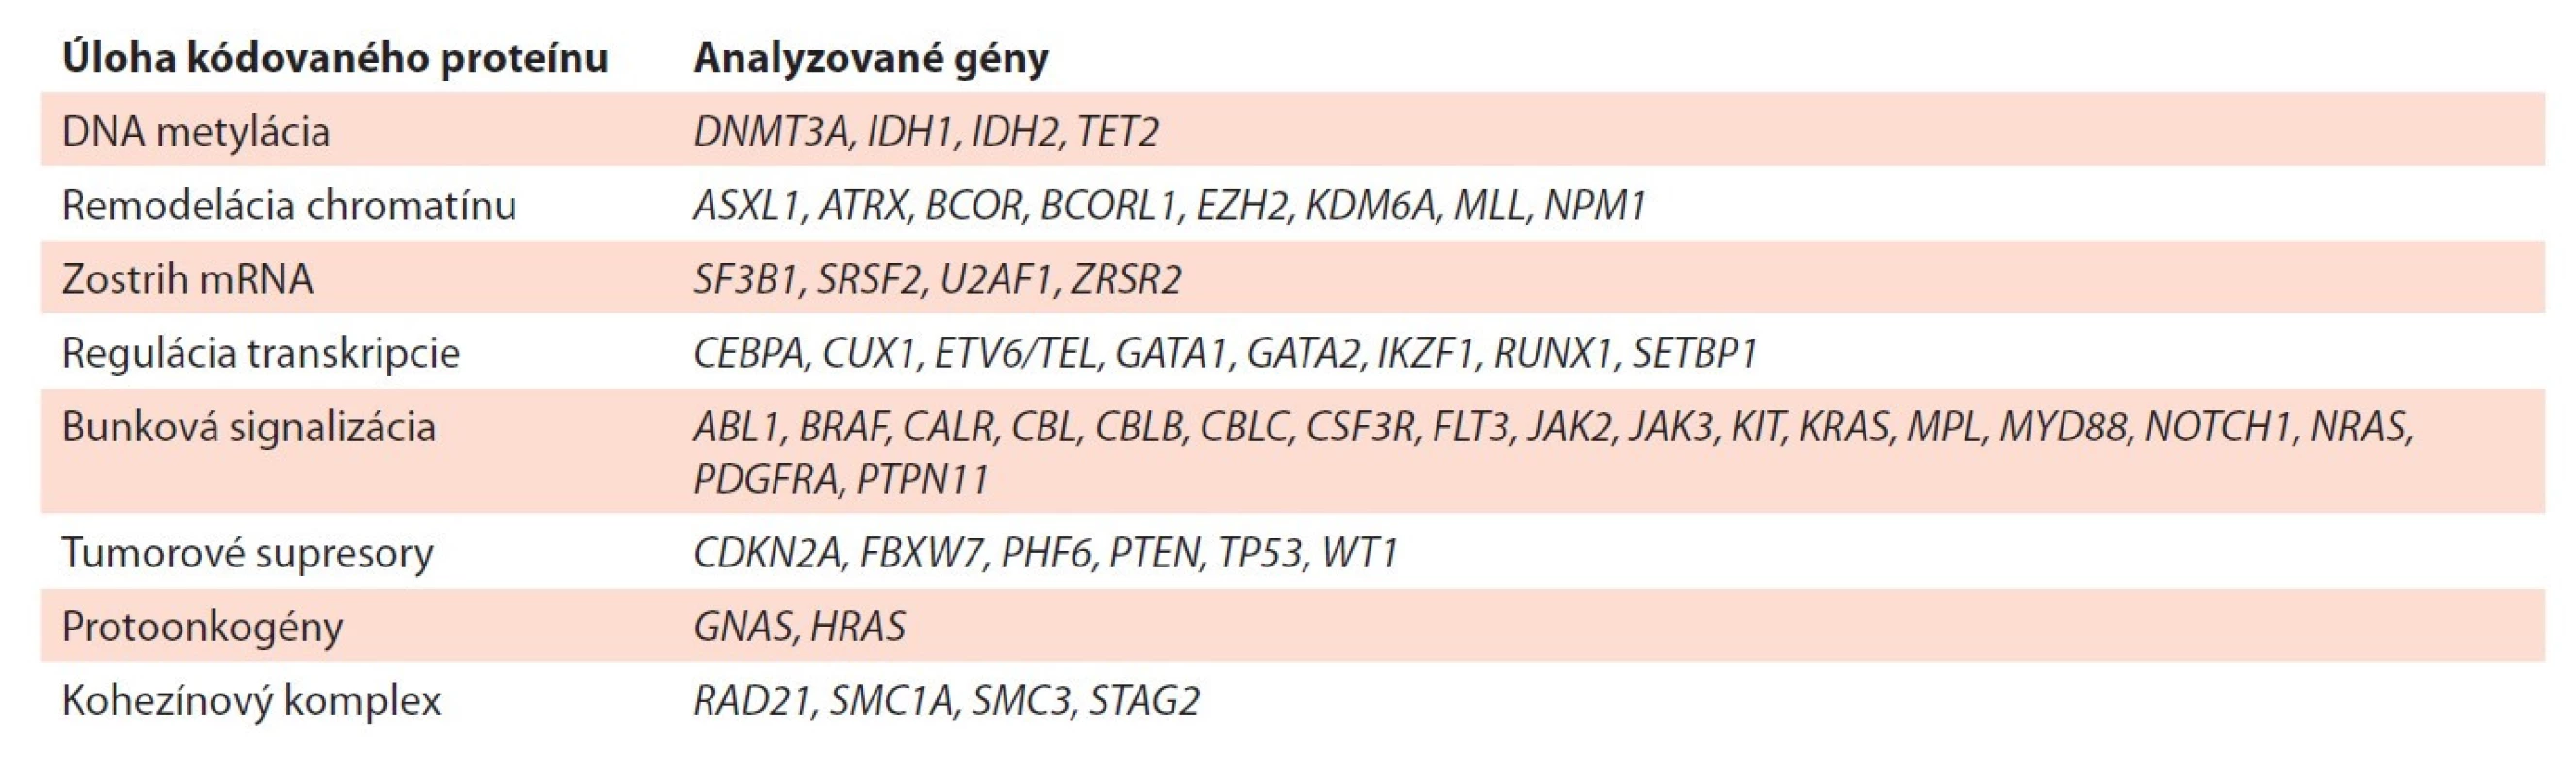 NGS (next generation sequencing) myeloidný panel. Prehľad génov, rozdelených podľa ich funkcie, ktoré sú
indikované k vyšetreniu u pacientov s MPN.<br>
(zdroj: https://www.illumina.com/products/by-type/clinical-research-products/trusight-myeloid.html#gene-list)